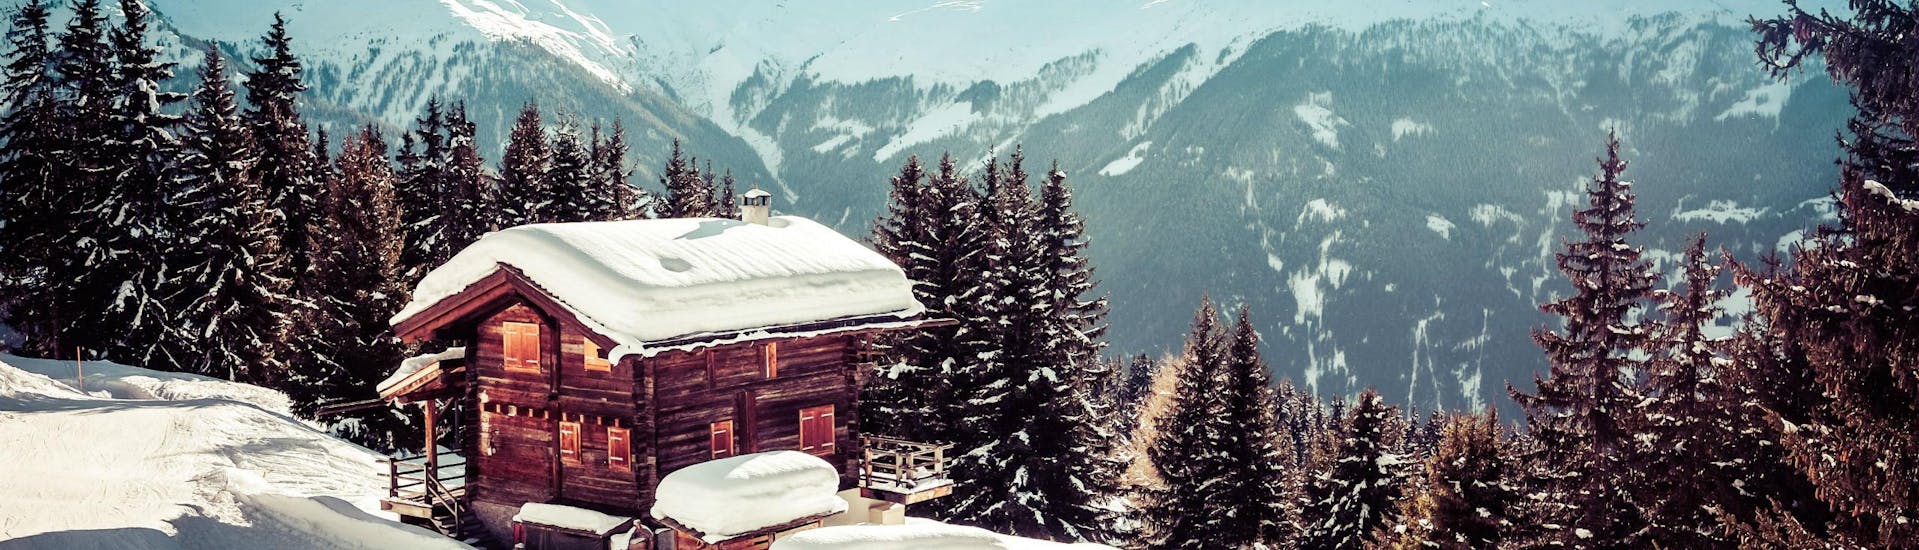 Ein Bild einer kleinen Berghütte im schweizer Skigebiet Verbier, wo Besucher bei den von den örtlichen Skischulen angebotenen Skikursen das Skifahren lernen können.